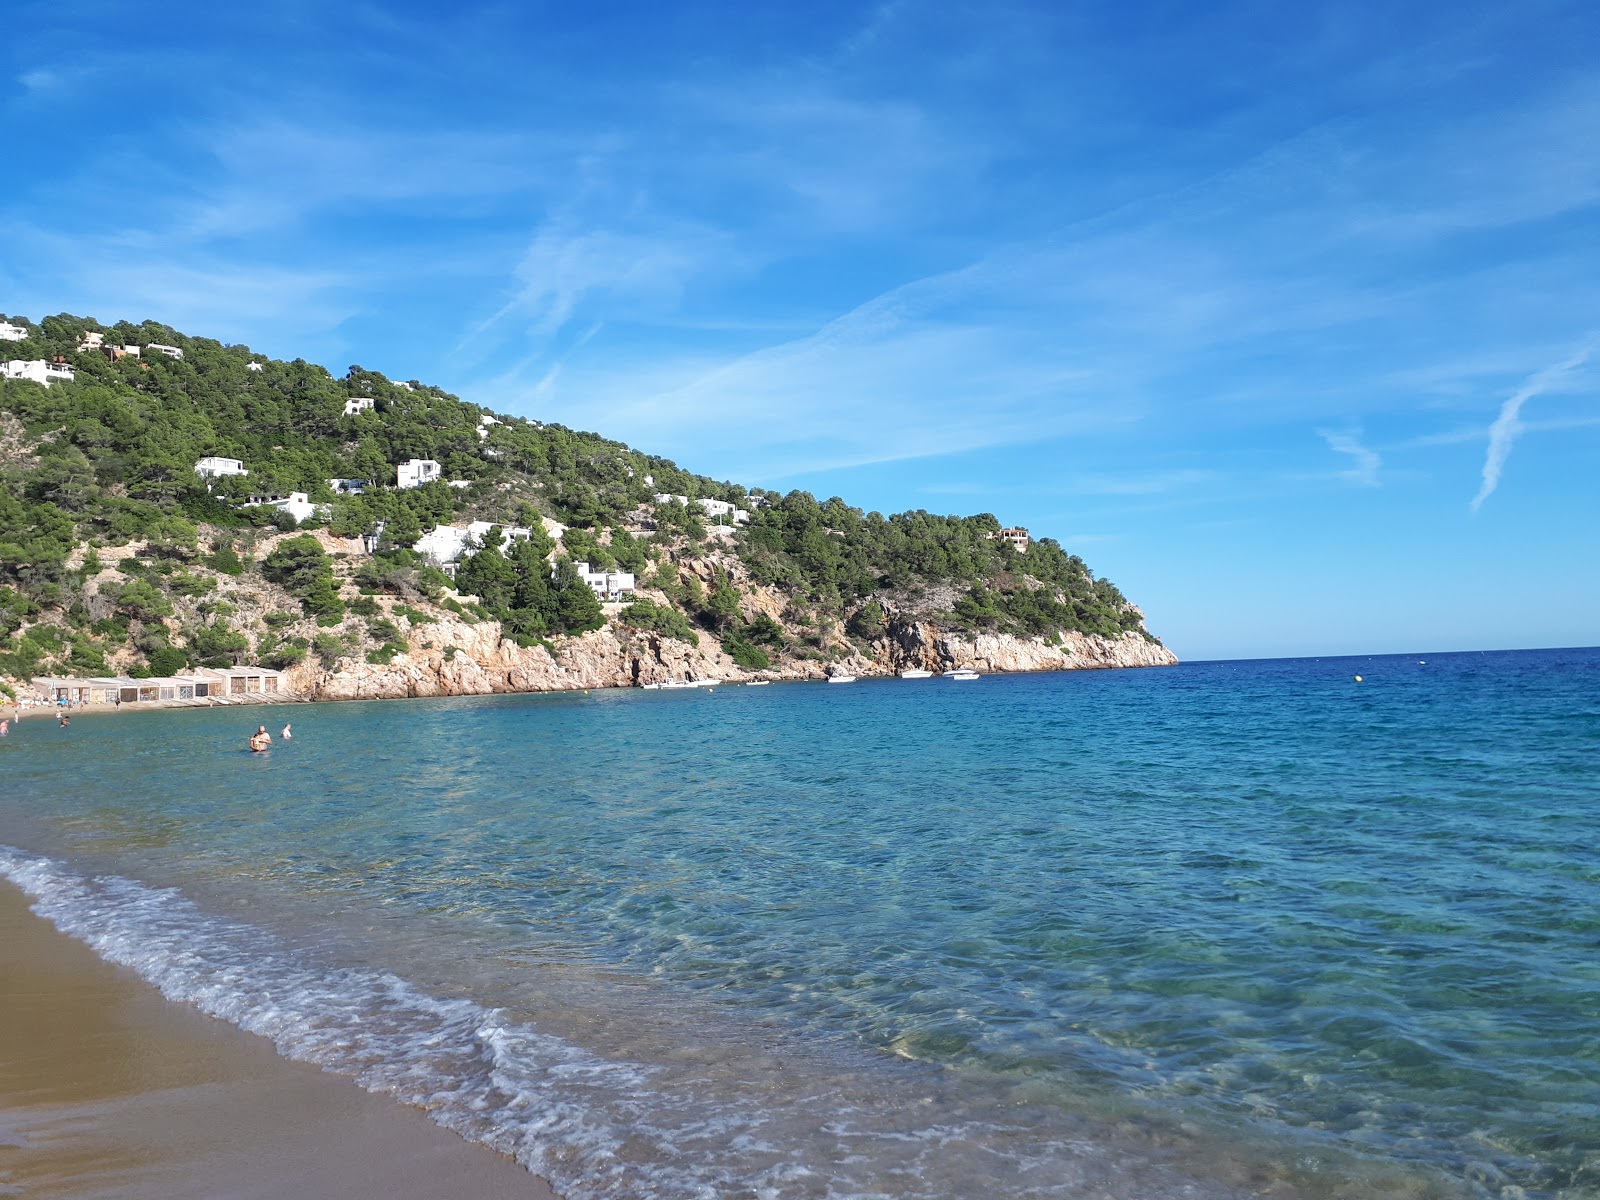 Foto di Spiaggia Cala de Sant Vicent ubicato in zona naturale